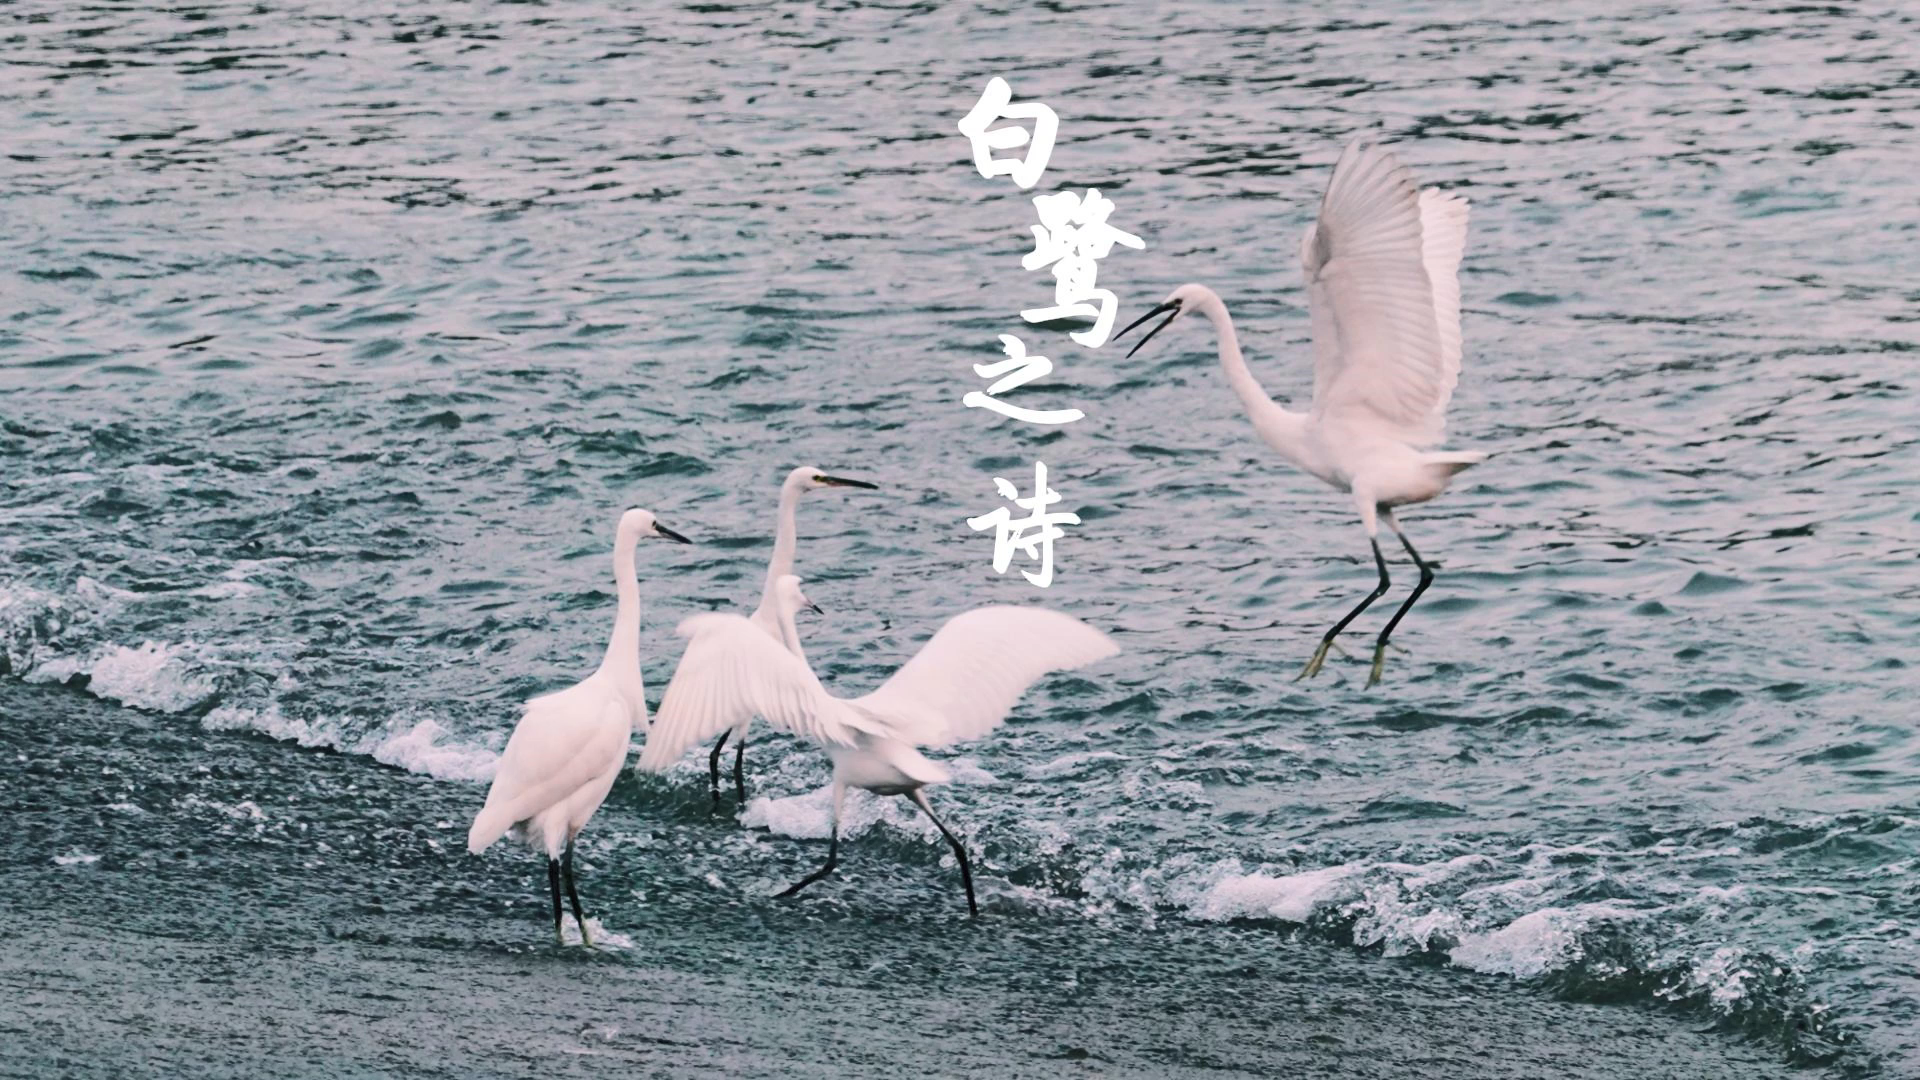 桐山溪畔断桥处，溪水潺潺，白鹭纷飞，这是冬日写给福鼎最美的散文诗。